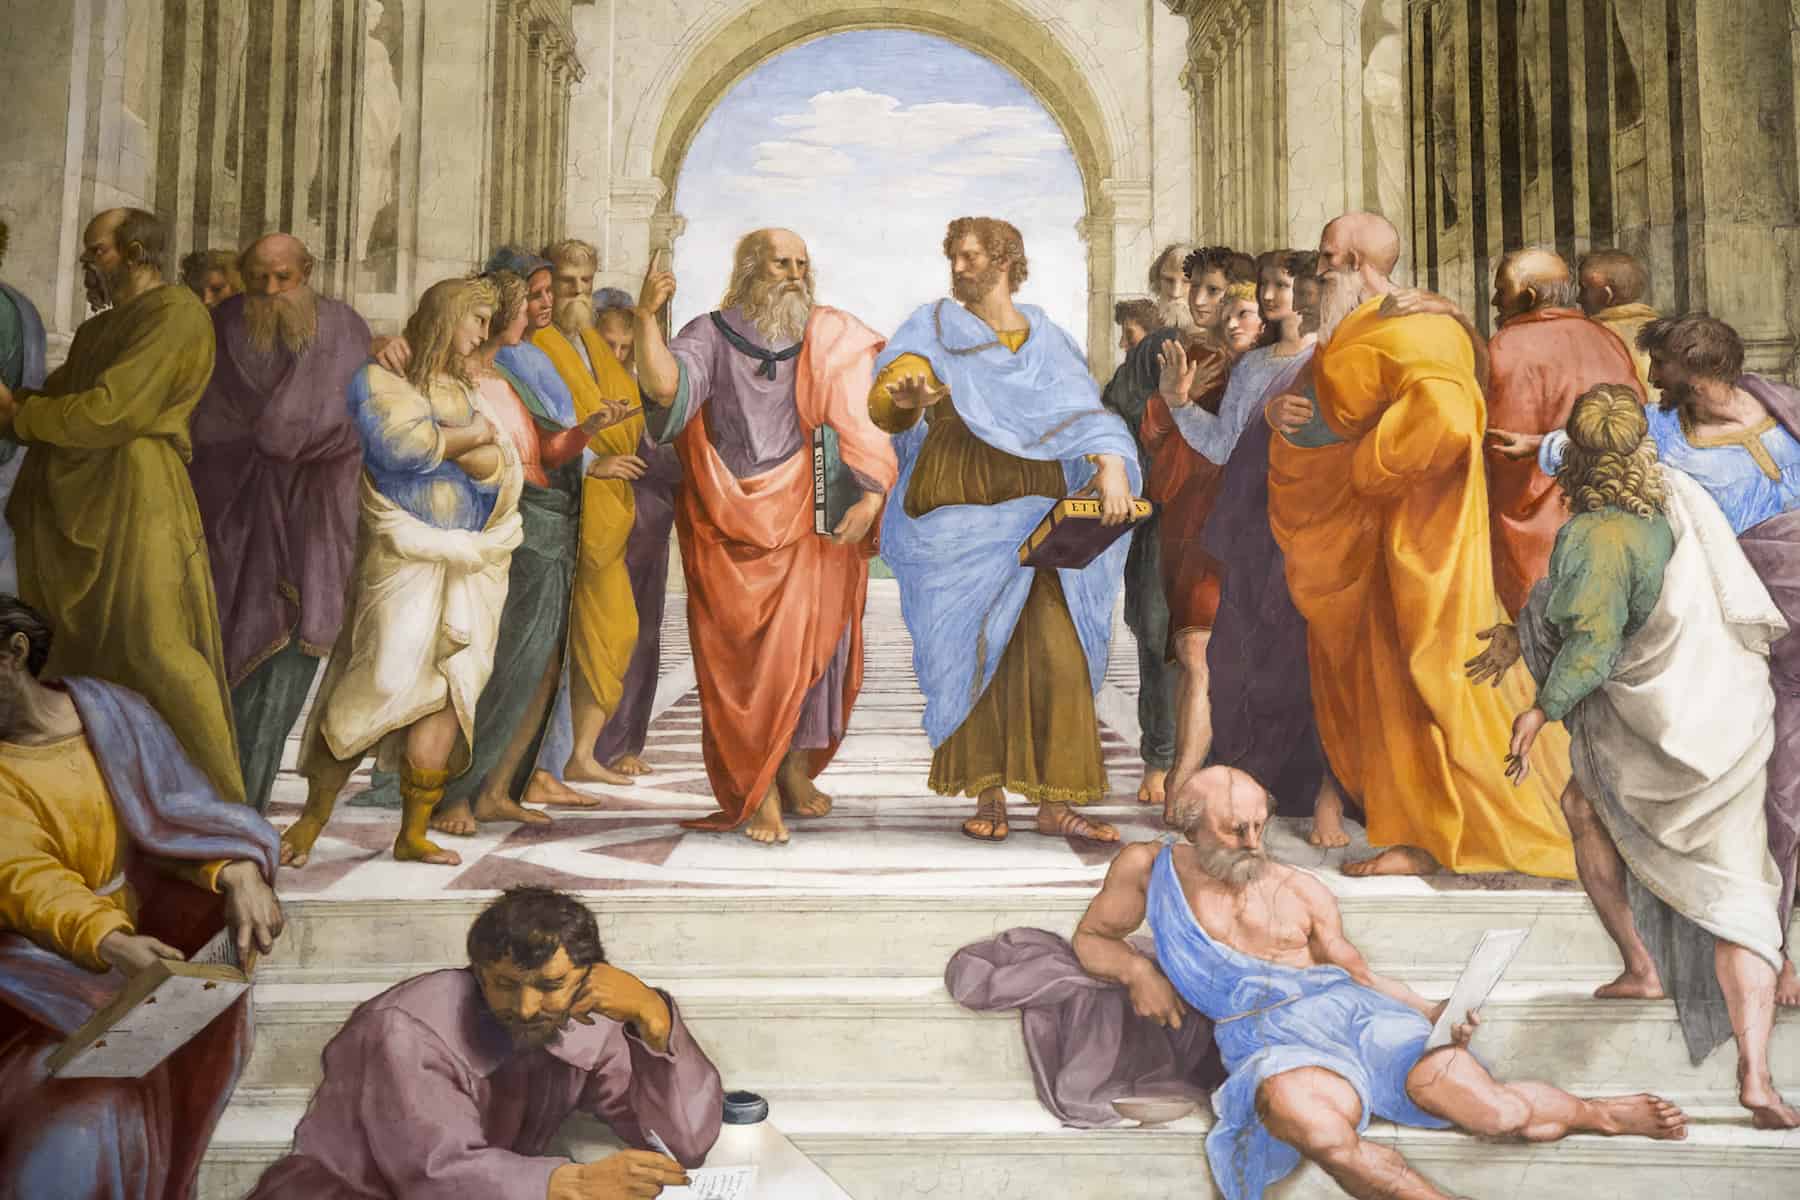 Image: Raphael, "School of Athens" (detail of Plato and Aristotle), 1509-1511. Stanza della Segnatura, Palazzi Pontifici, Vatican